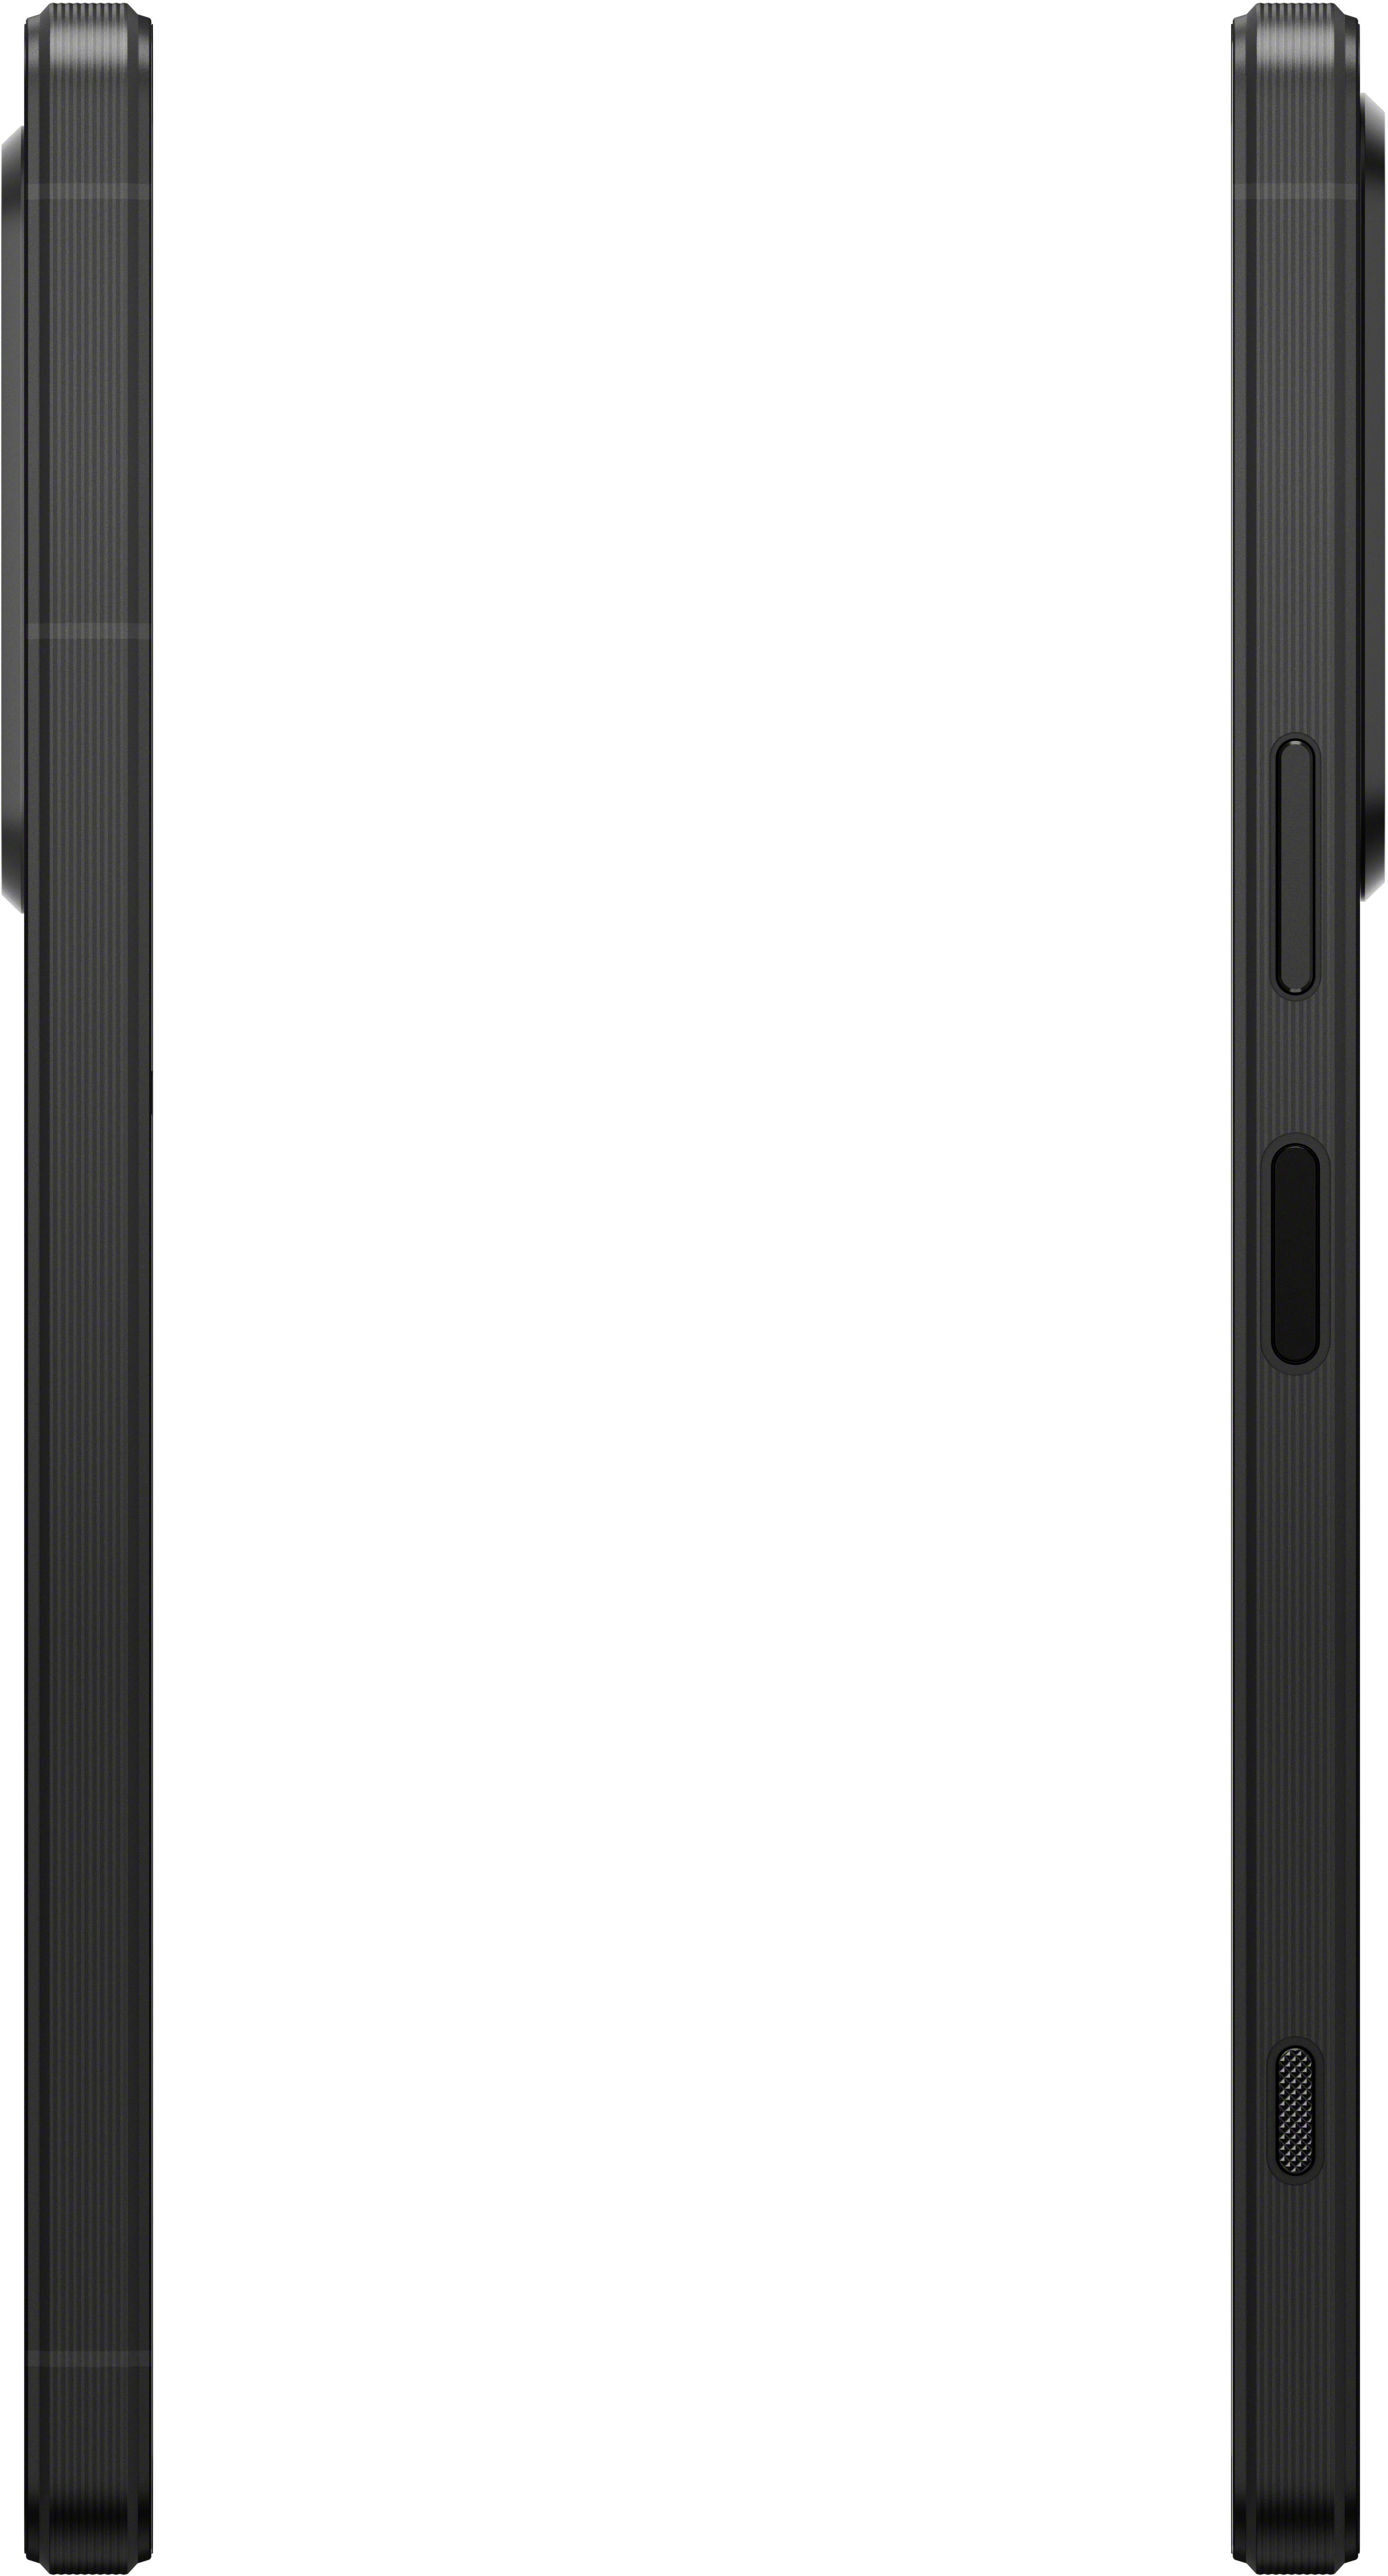 5G 256GB 1 Xperia Black Best Sony - V (Unlocked) XQDQ62/B Buy